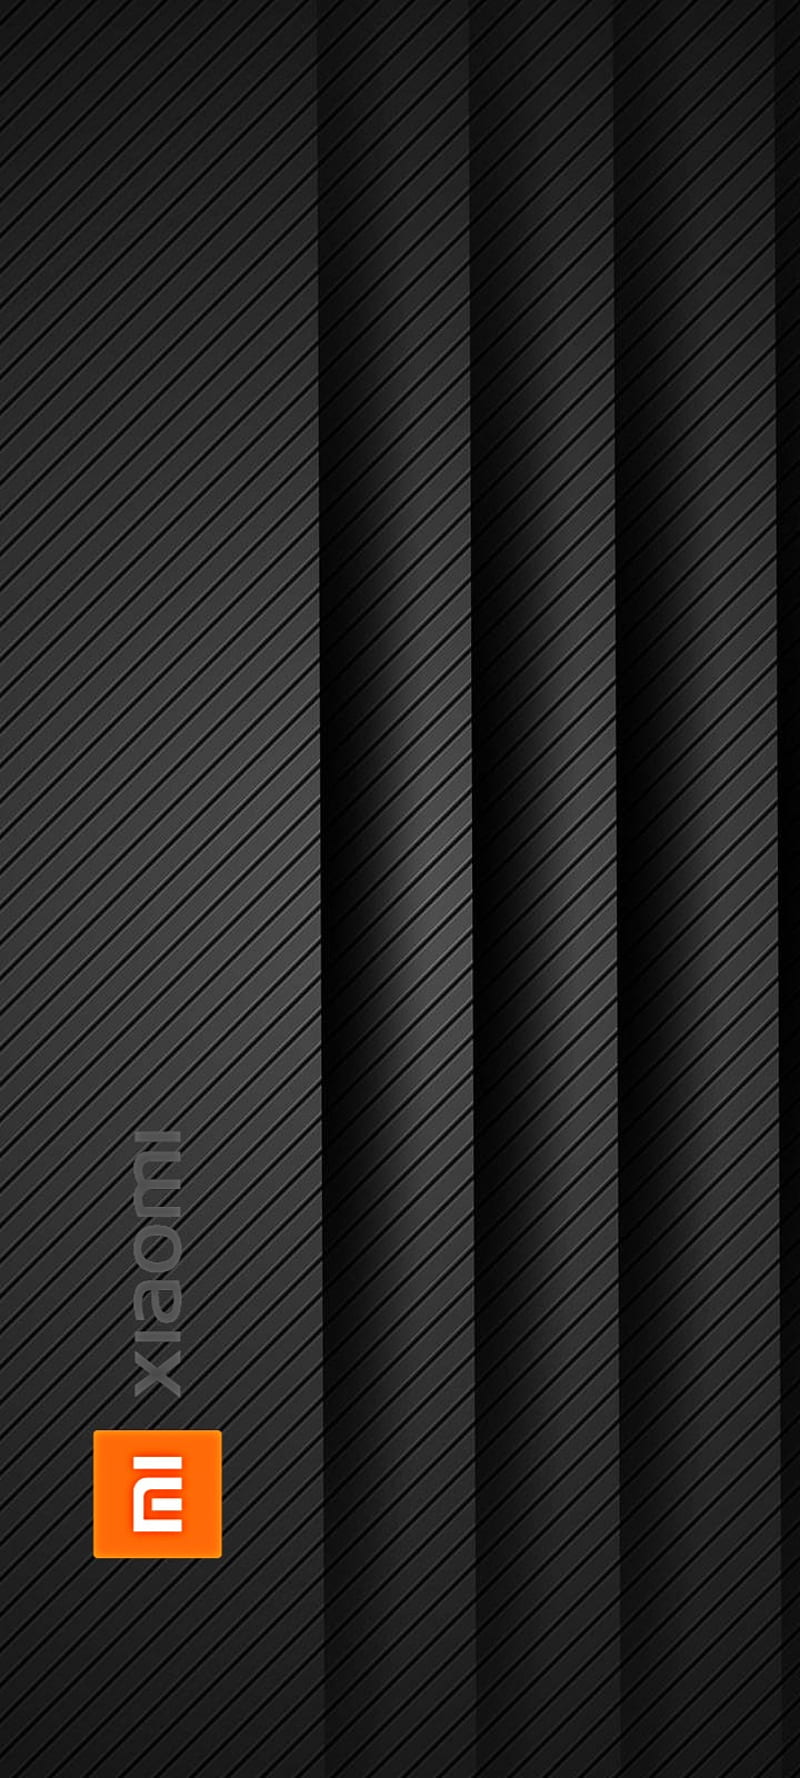 Xiaomi 2 wallpaper mang đến cho bạn trải nghiệm tuyệt vời với hình ảnh nền tuyệt đẹp và sang trọng. Sự kết hợp màu sắc tinh tế và thiết kế độc đáo của Xiaomi 2 wallpaper sẽ giúp bạn thể hiện phong cách của mình một cách tuyệt vời.